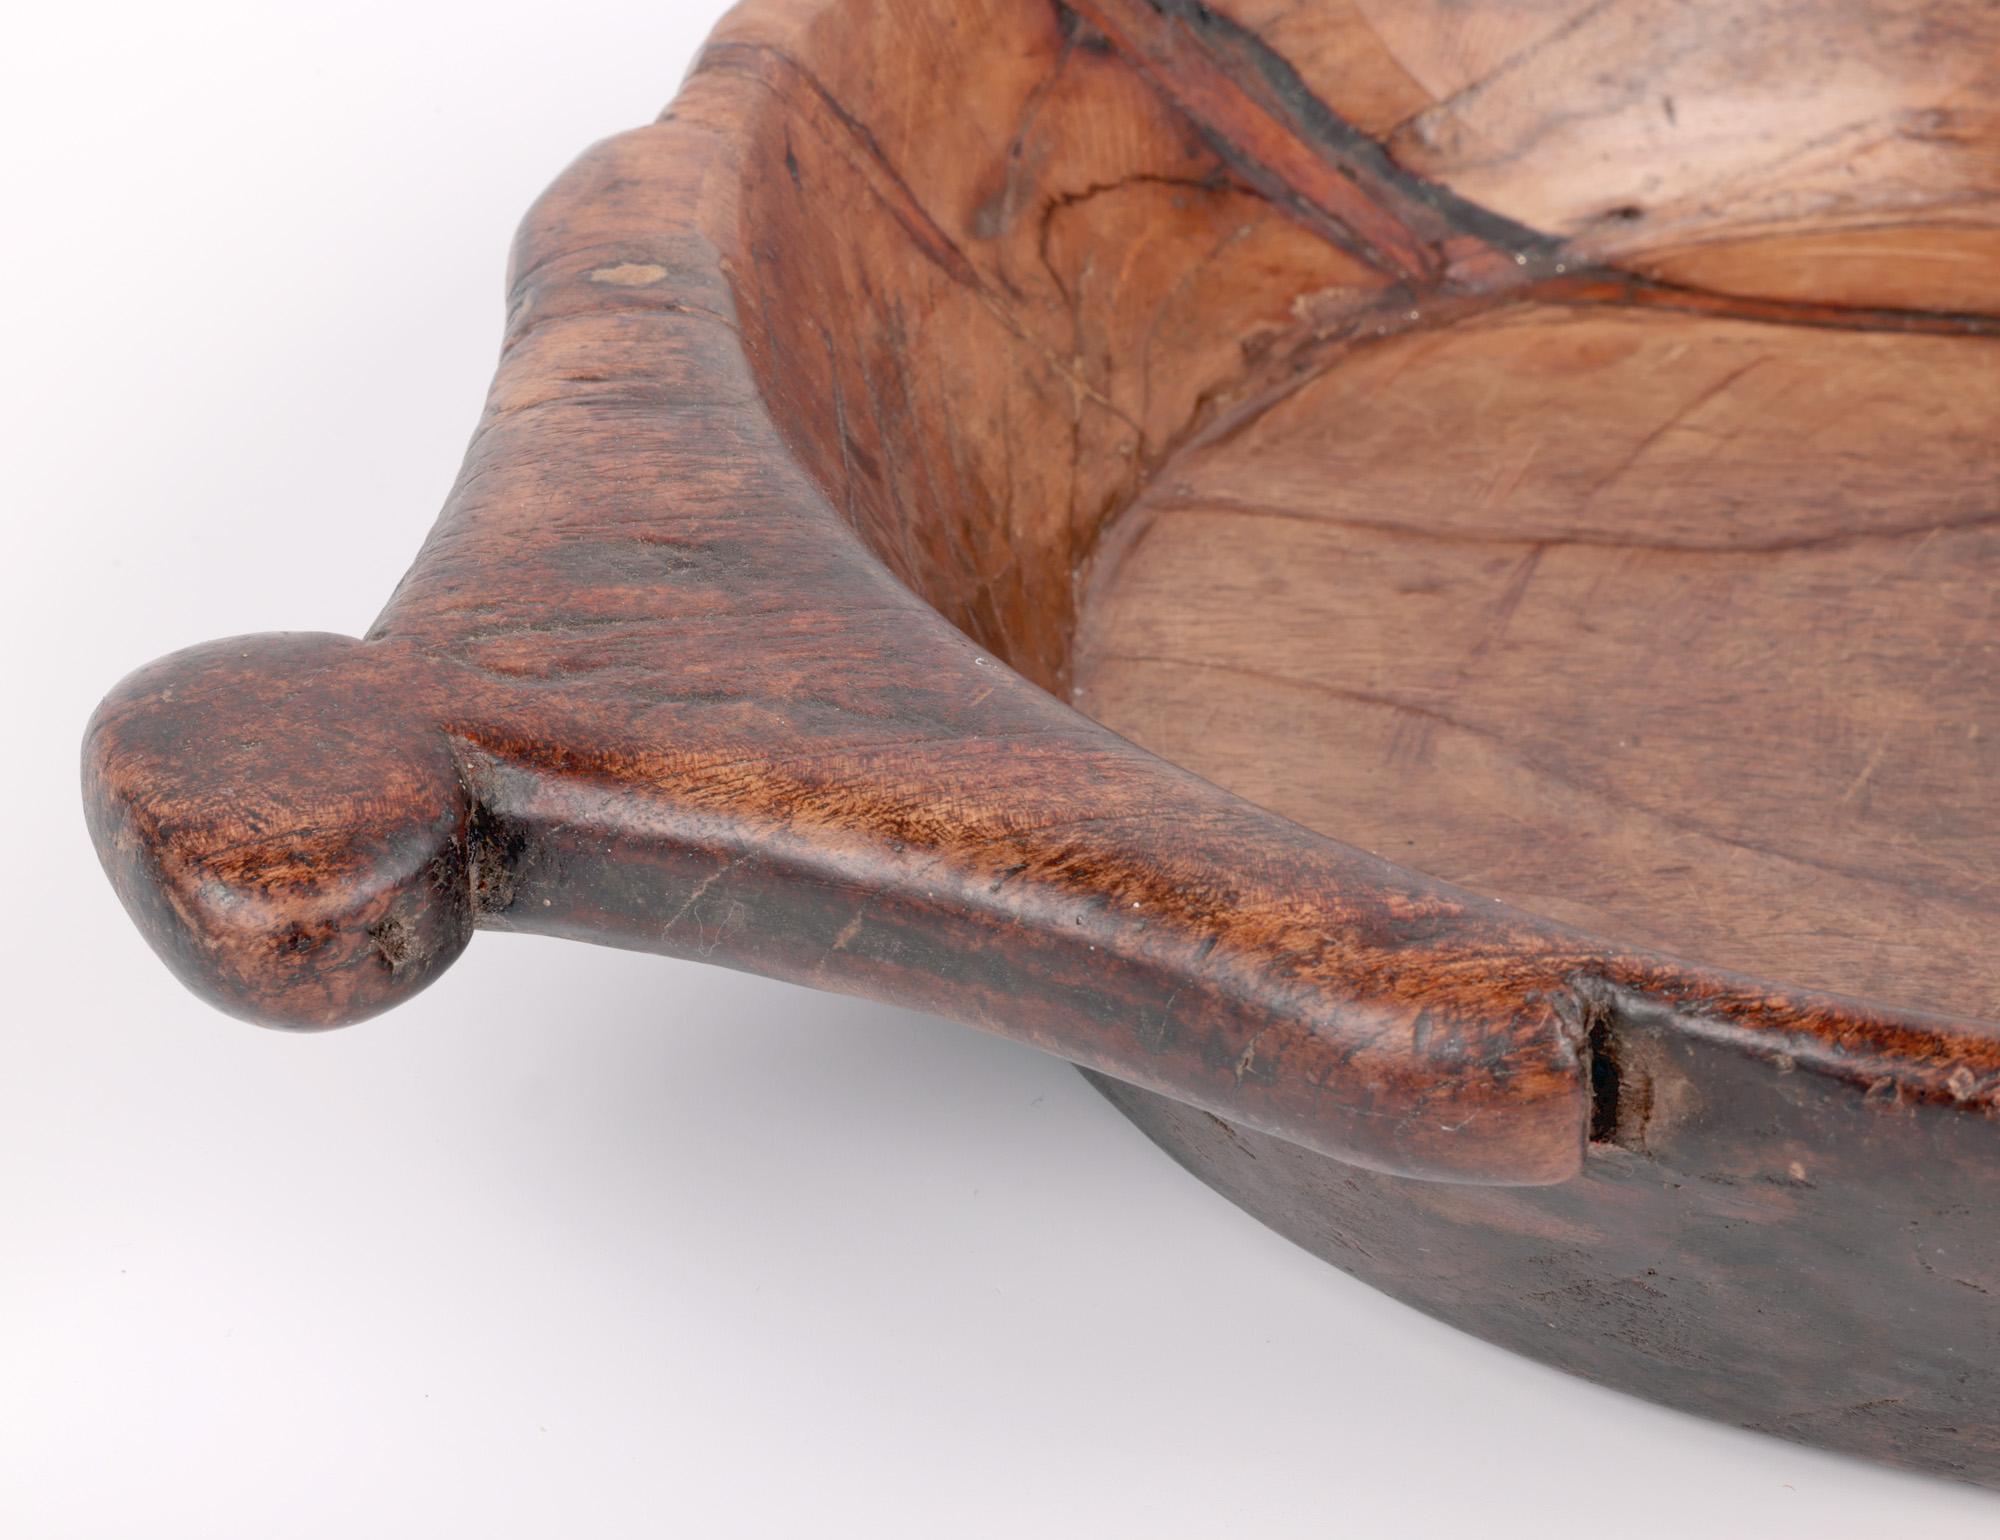 Un élégant bol en bois africain sculpté à la main datant du début ou du milieu du 20e siècle. Le bol est fabriqué à partir d'un seul morceau de bois indigène et présente une forme ronde large et peu profonde, avec des poignées plates sculptées sur